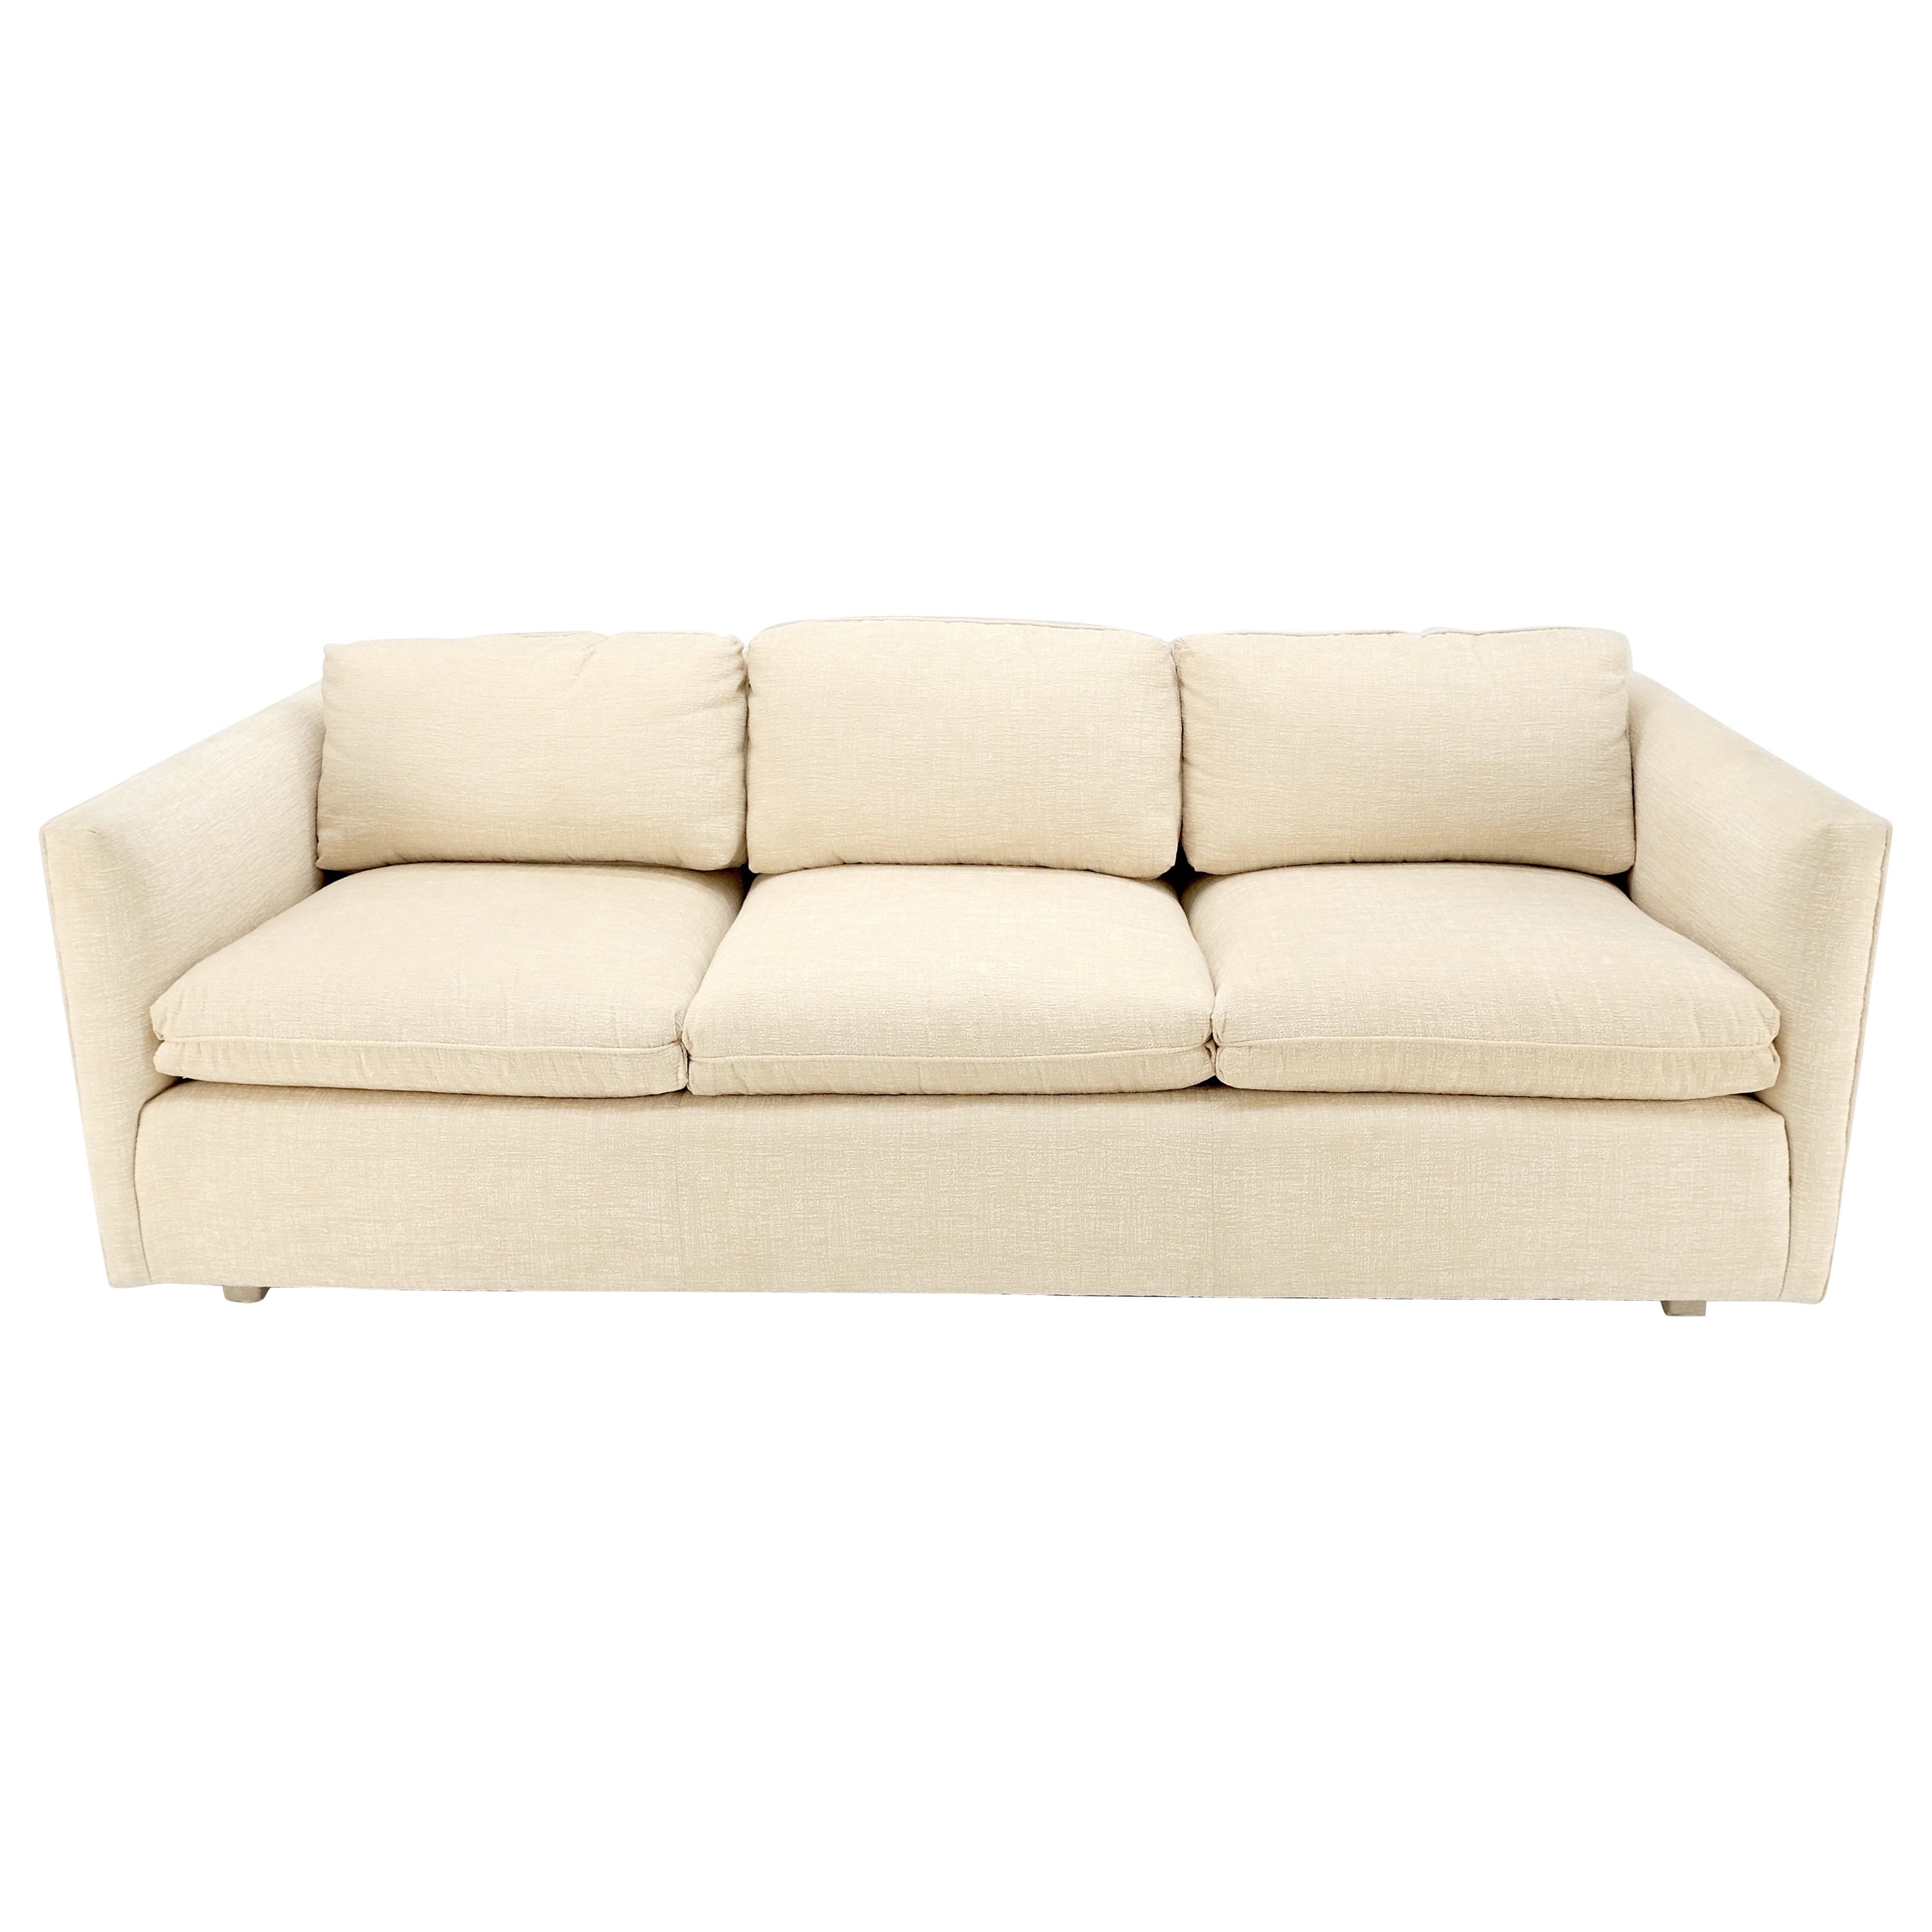 Sofa en forme de boîte en tissu beige mi-siècle moderne, design personnalisé MINT ! en vente